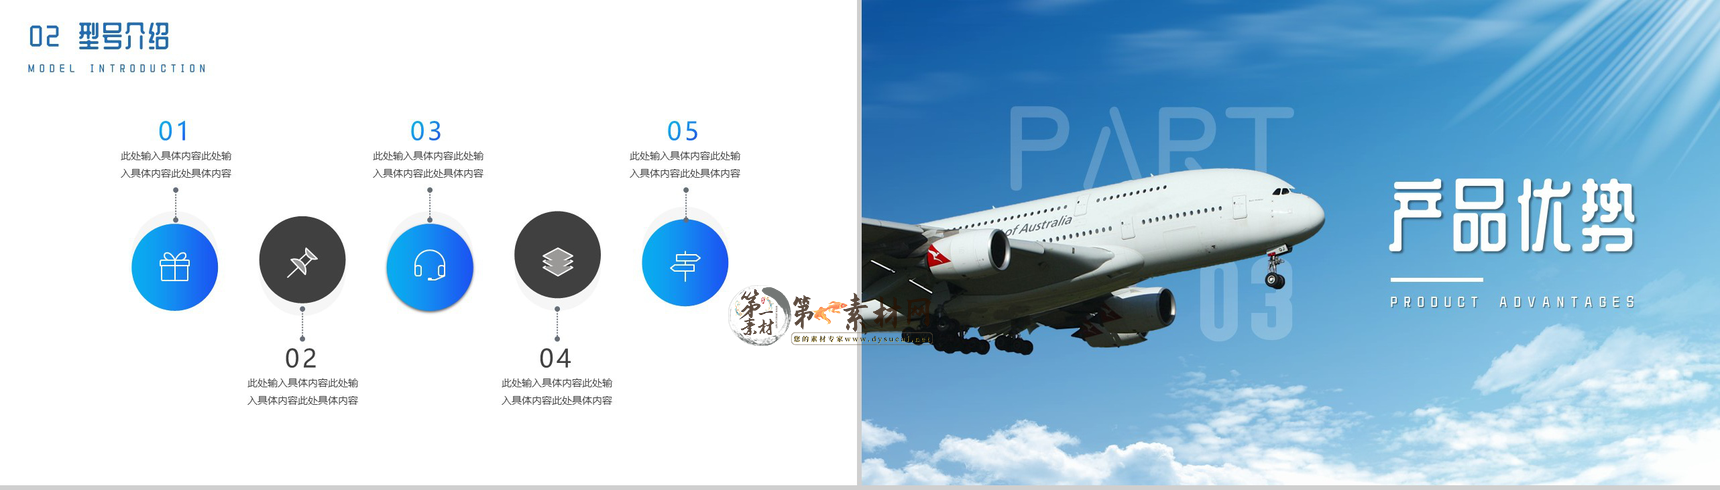 蓝色简约航空公司飞机型号介绍PPT模板-6